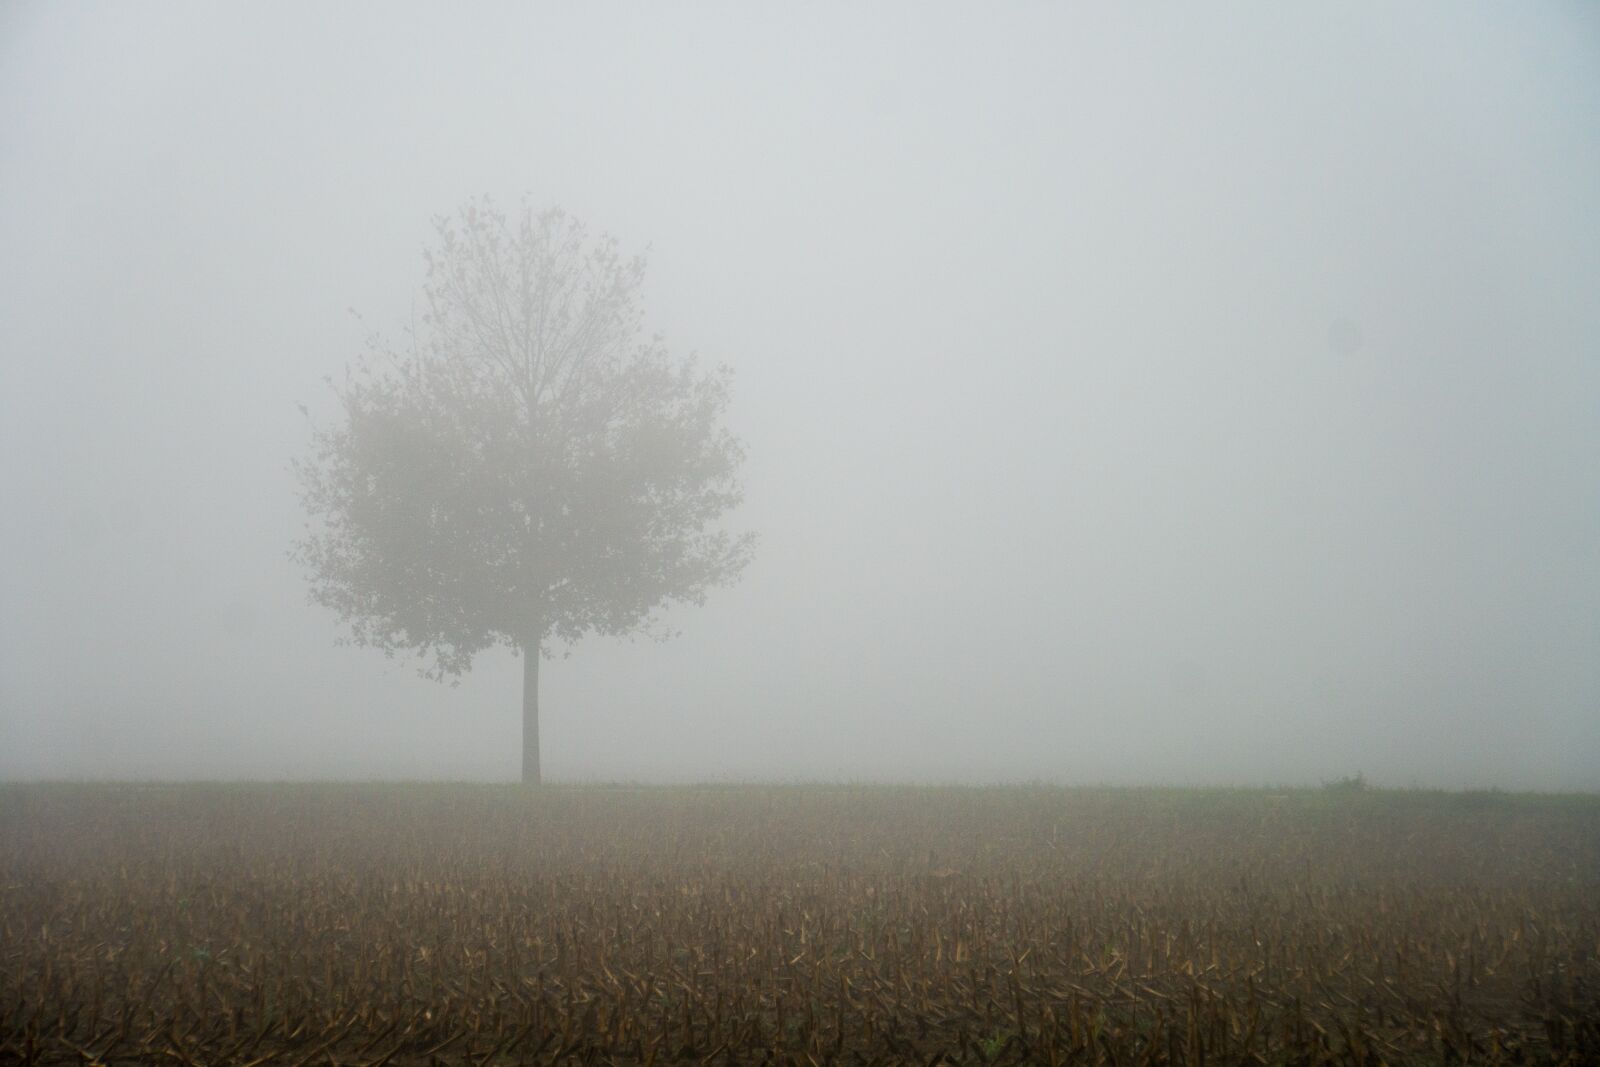 Sony a6500 sample photo. Fog, autumn, tree photography